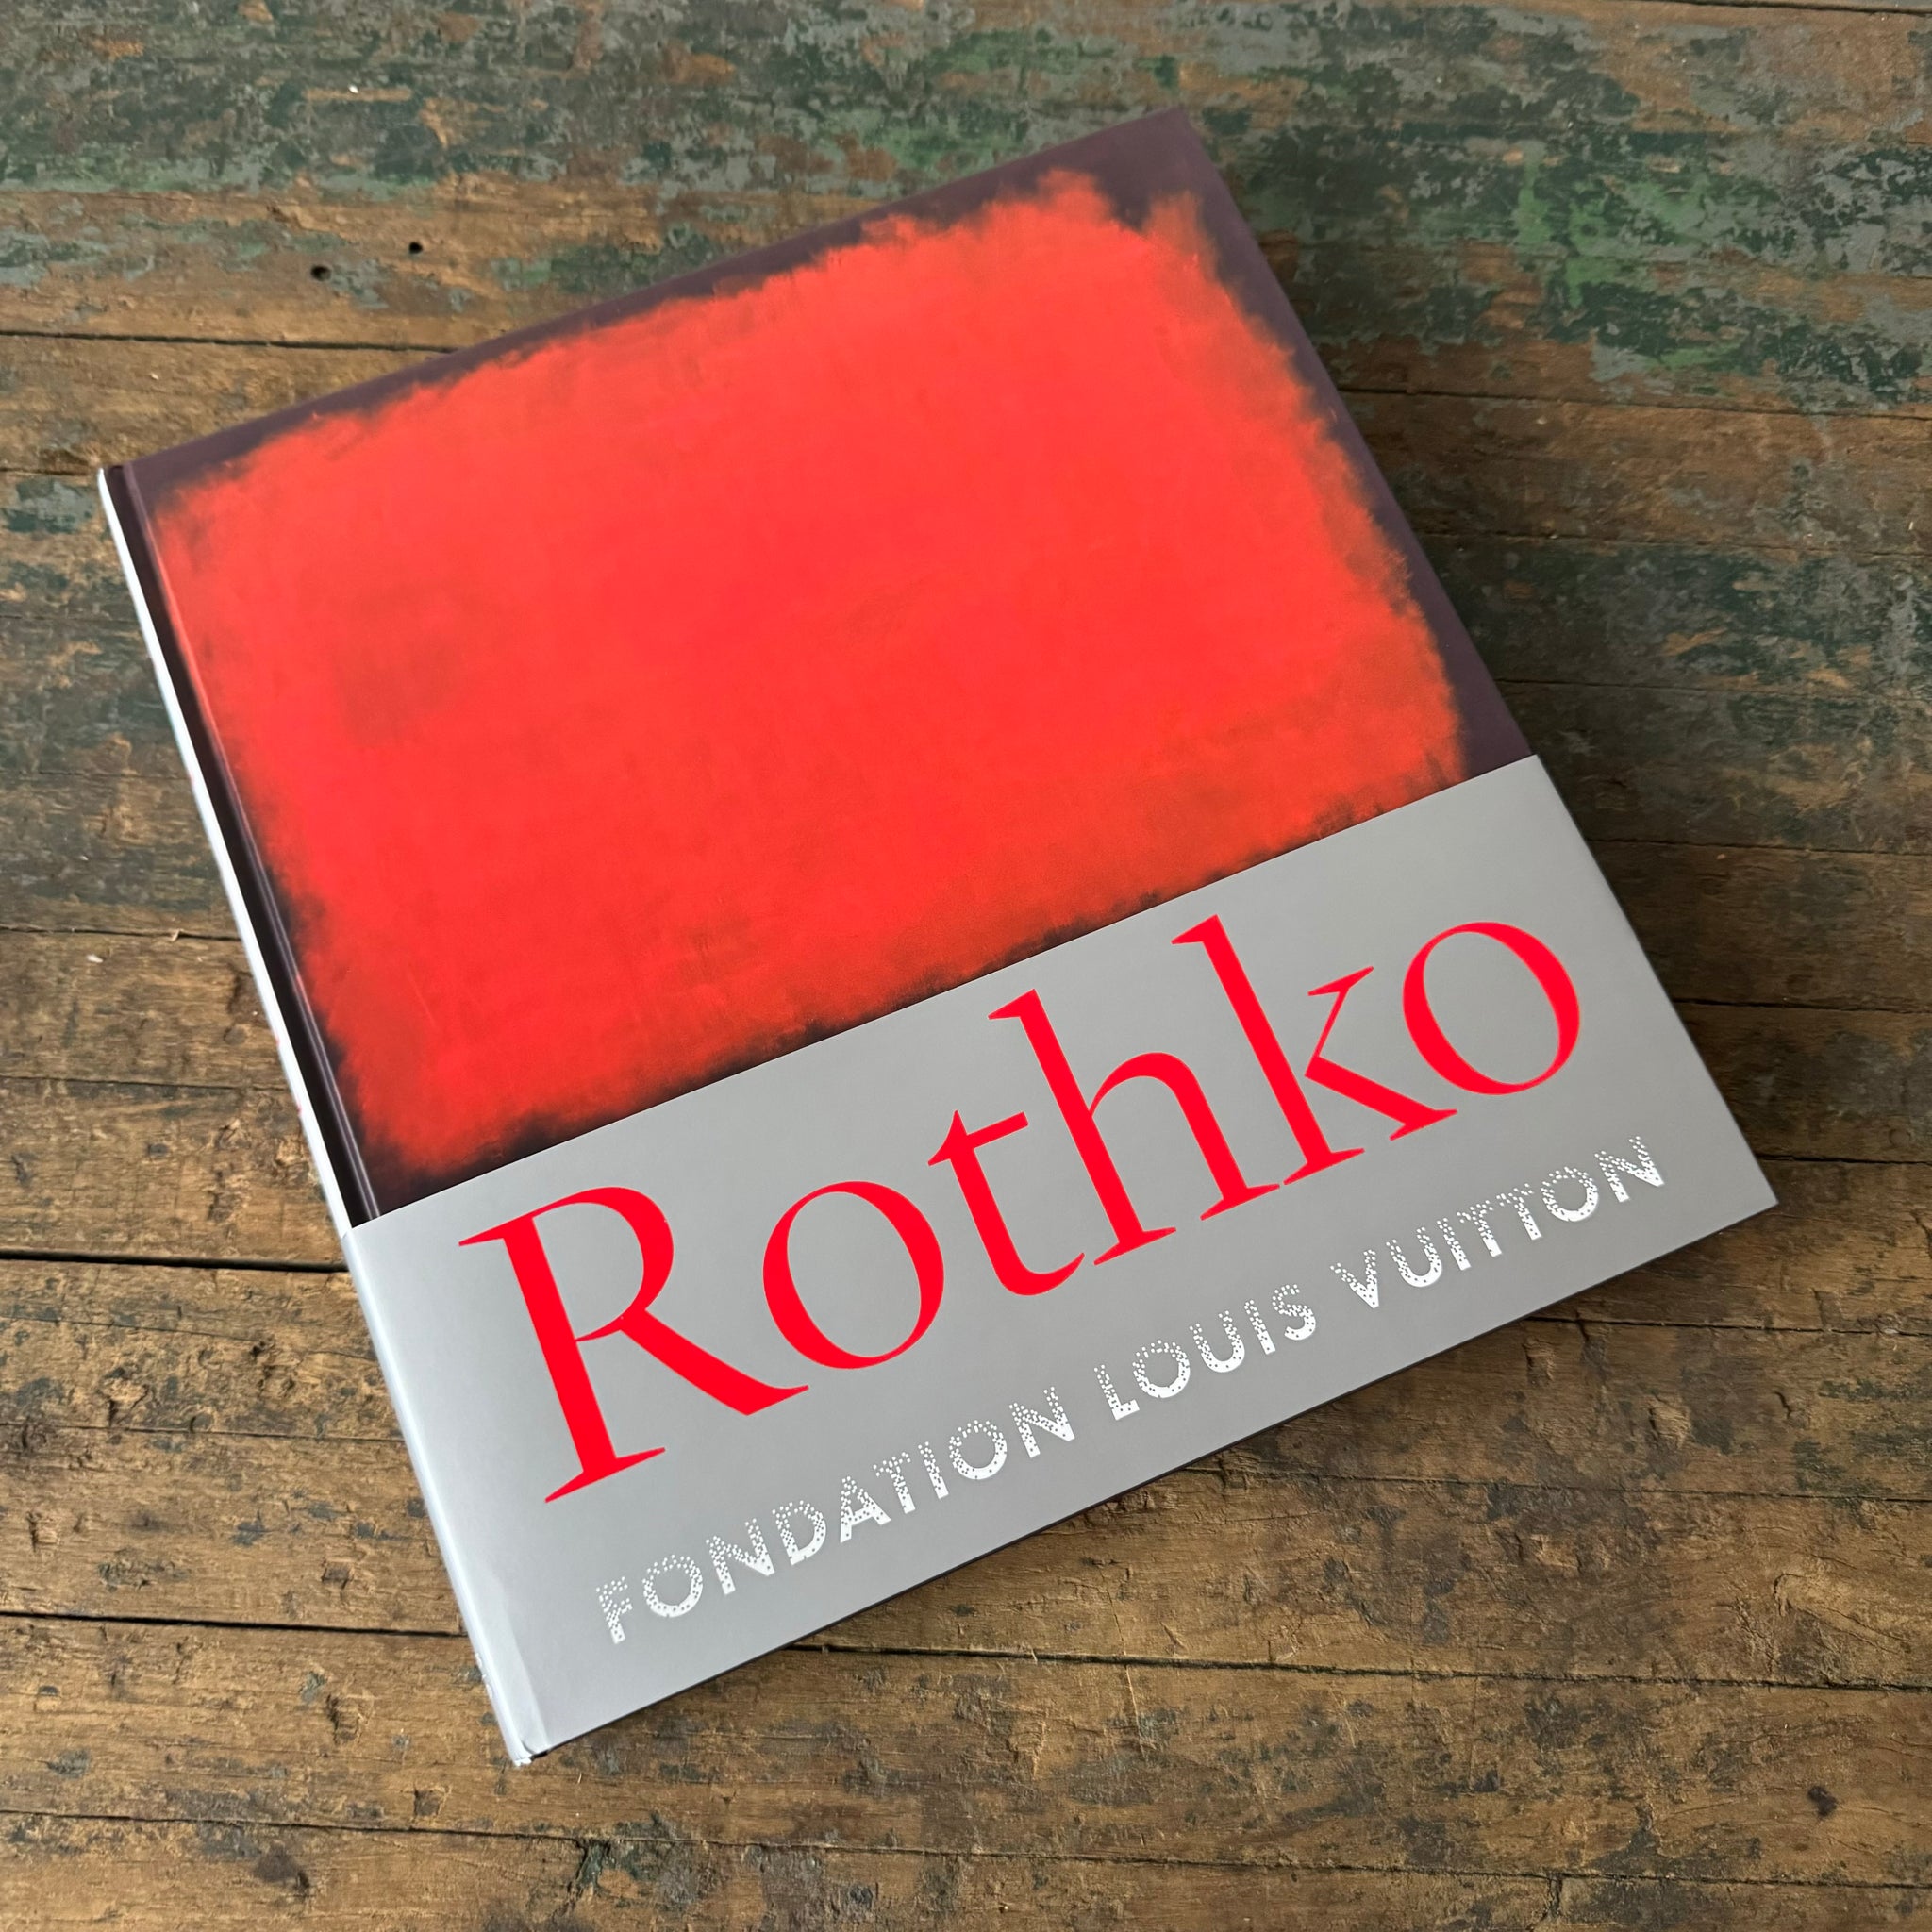 Rothko (Louis Vuitton Foundation)